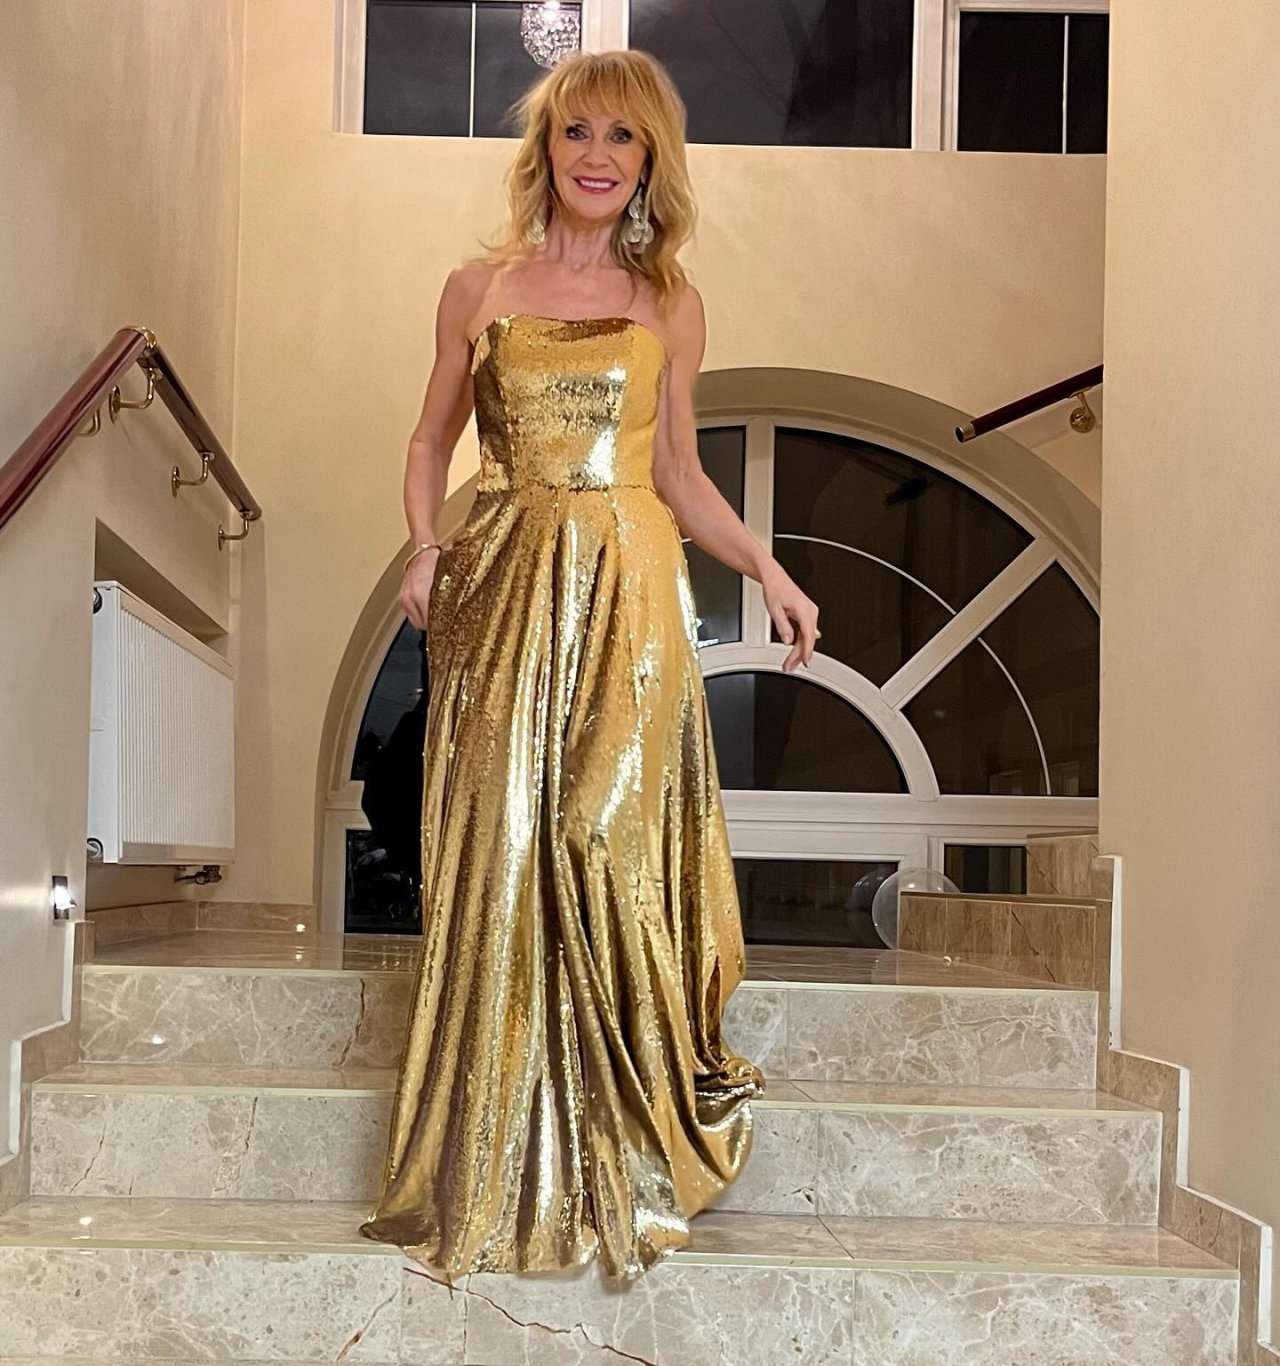 Beata Ścibakówna w złotej sukni idzie po schodach